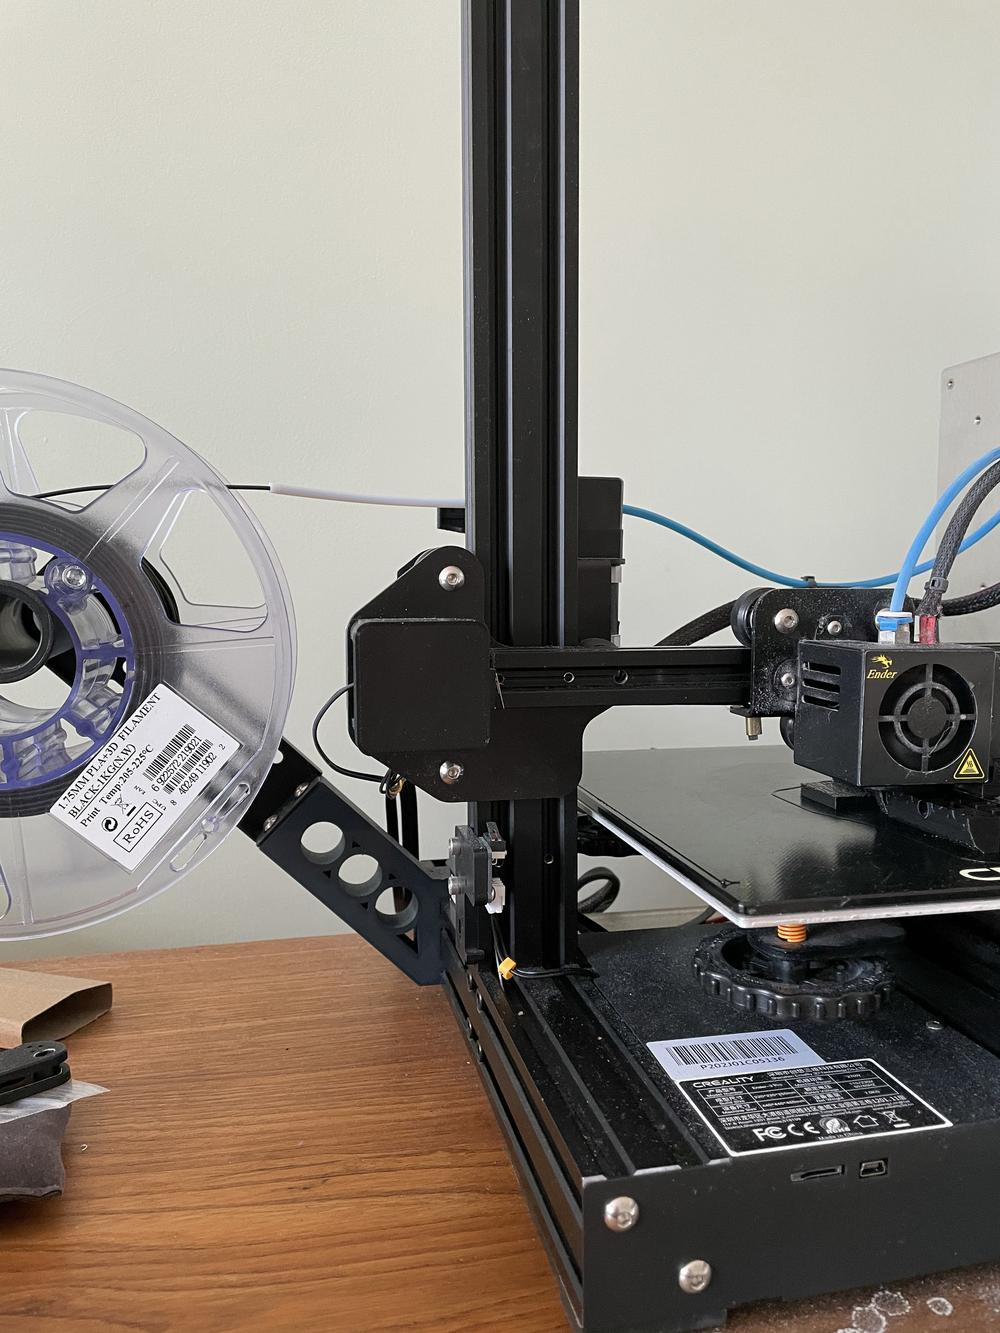 A black spool of 3D printer filament is loaded into a 3D printer.